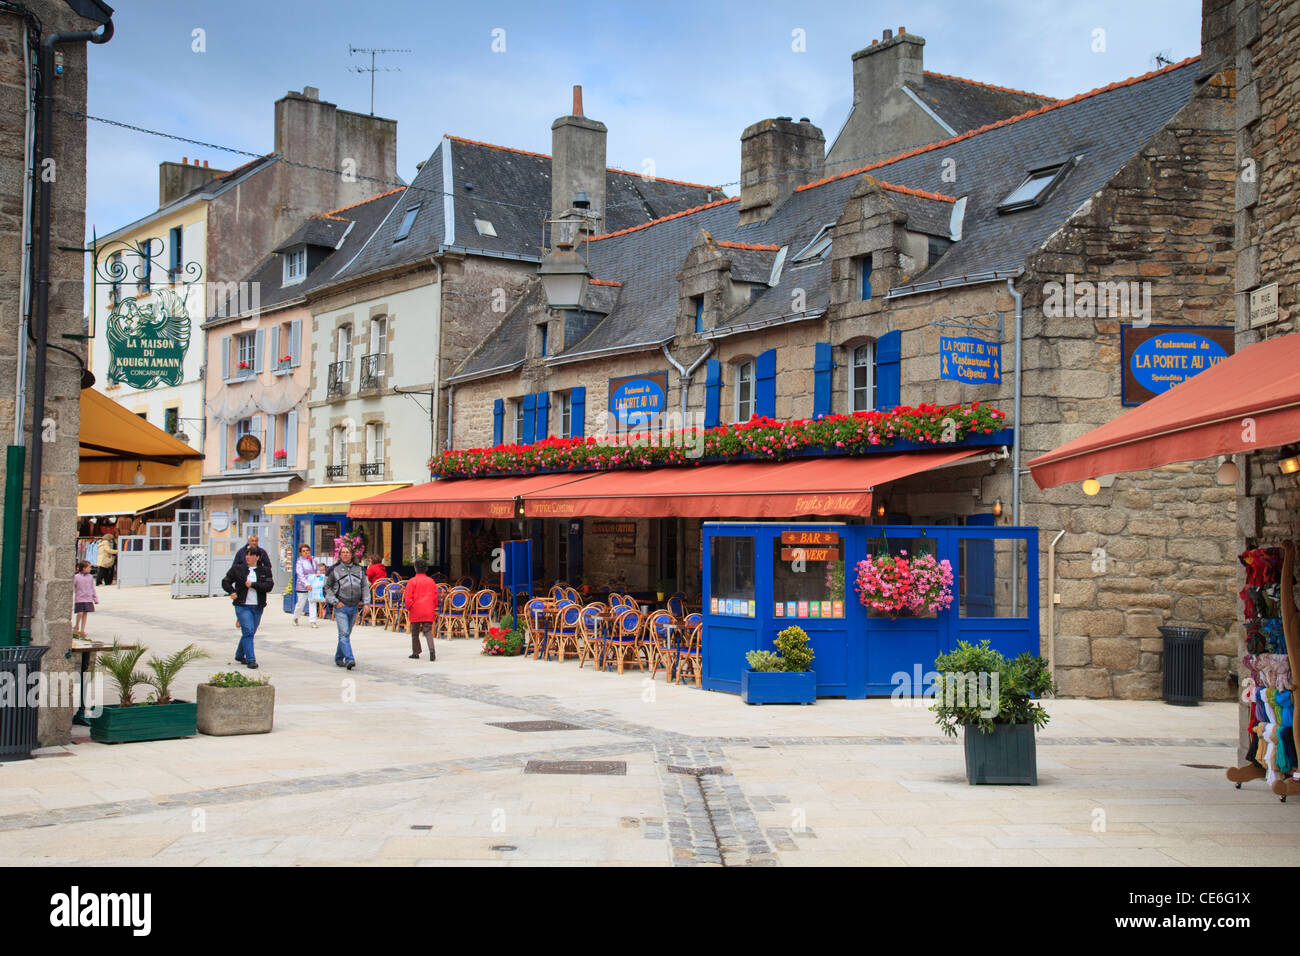 Les gens se promener parmi les boutiques et restaurants de la Ville Close, le quartier historique de Cocarneau, Bretagne, France. Banque D'Images